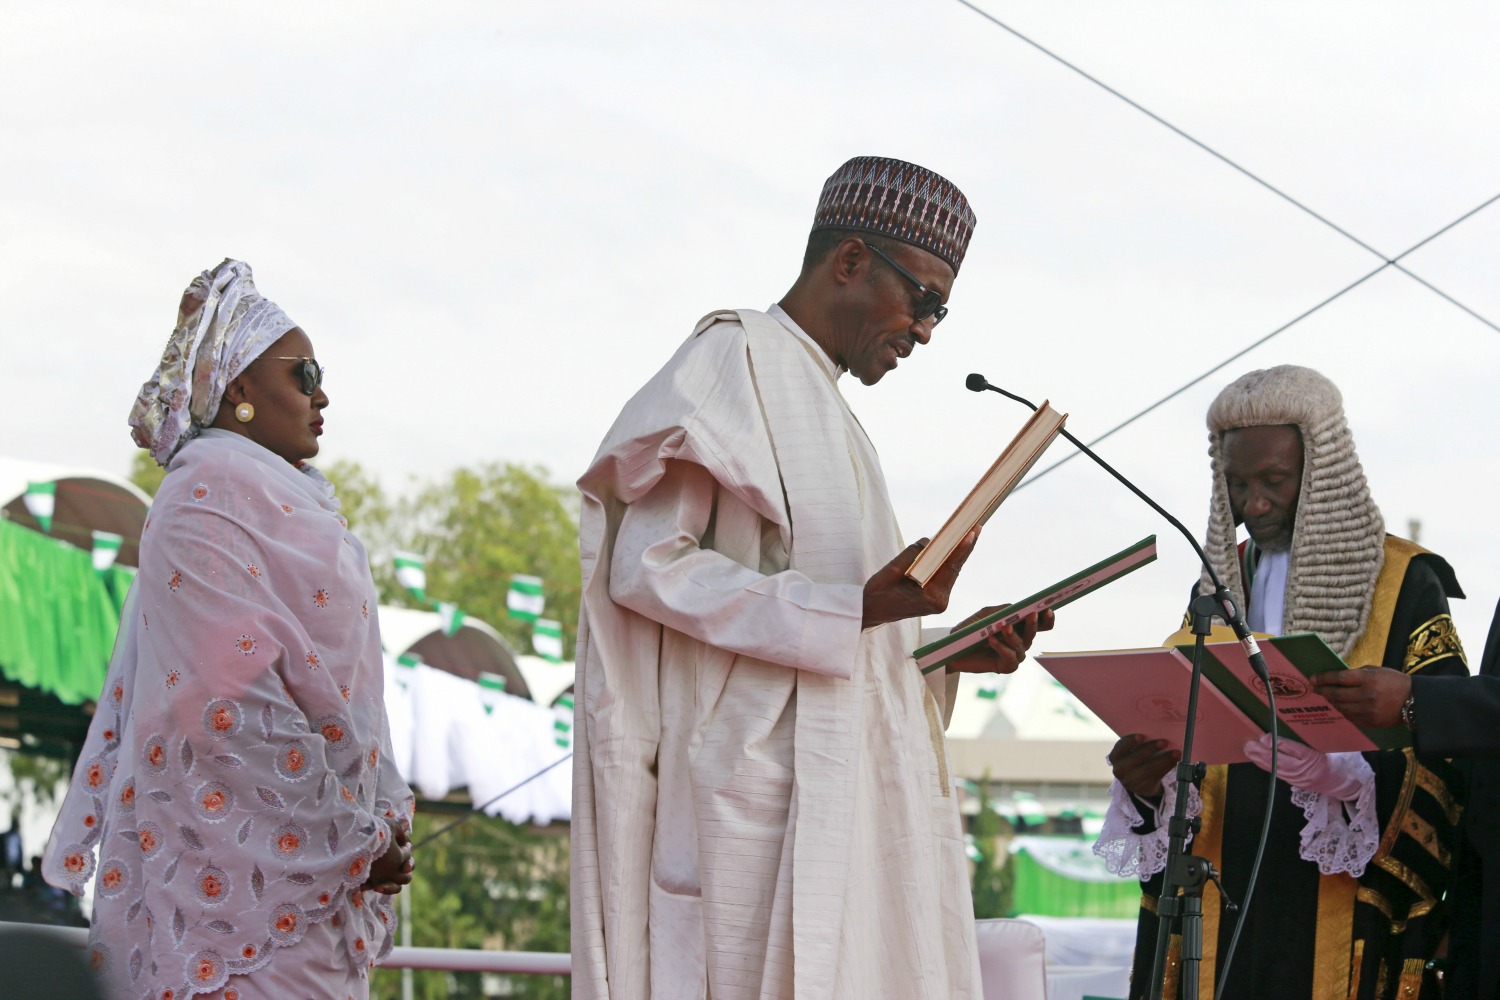 El presidente de Nigeria recibe una sorprendente advertencia